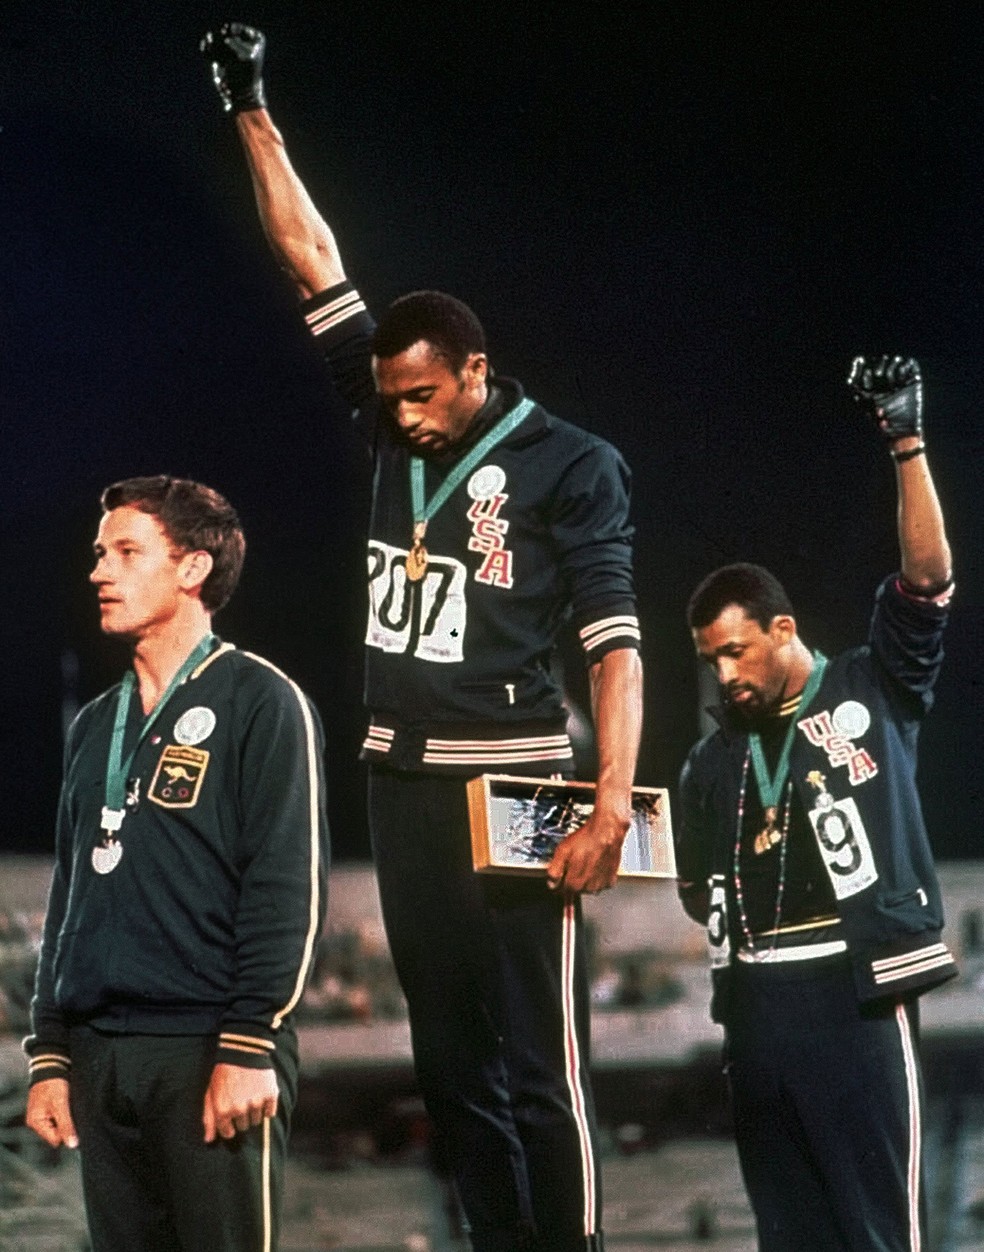 Gestos de protesto durante o hino dos EUA não são limitados ao presente - os atletas Tommie Smith e John Carlos levantaram os punhos cerrados, usando uma luva preta, durante a cerimônia de entrega de medalha dos Jogos Olímpicos do México de 1968 — Foto: AP Photo/File